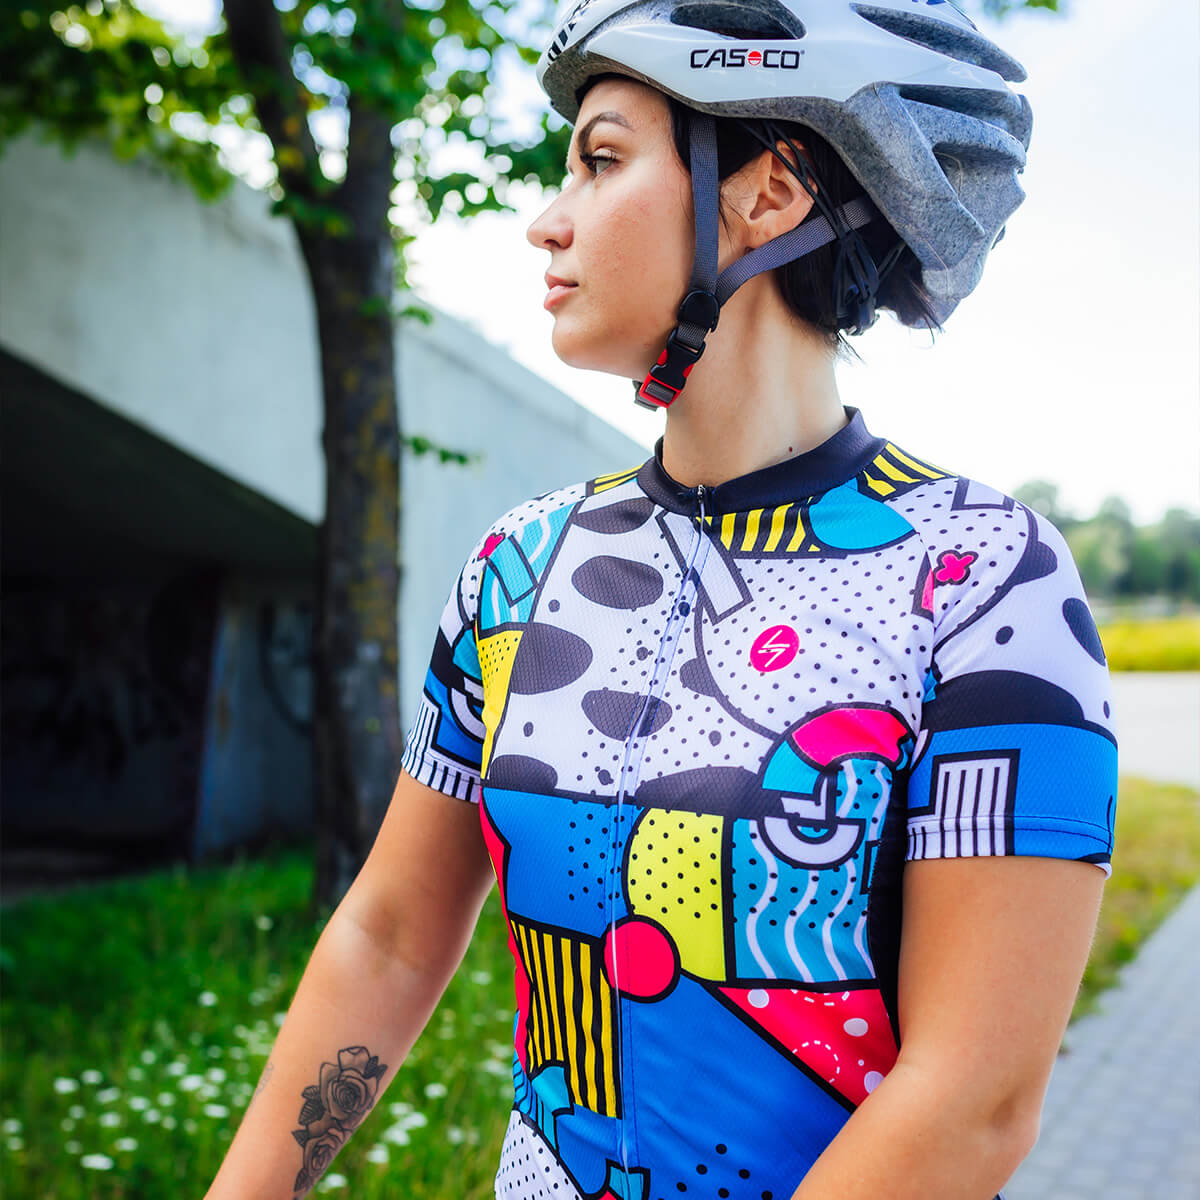 Women's cycling jersey